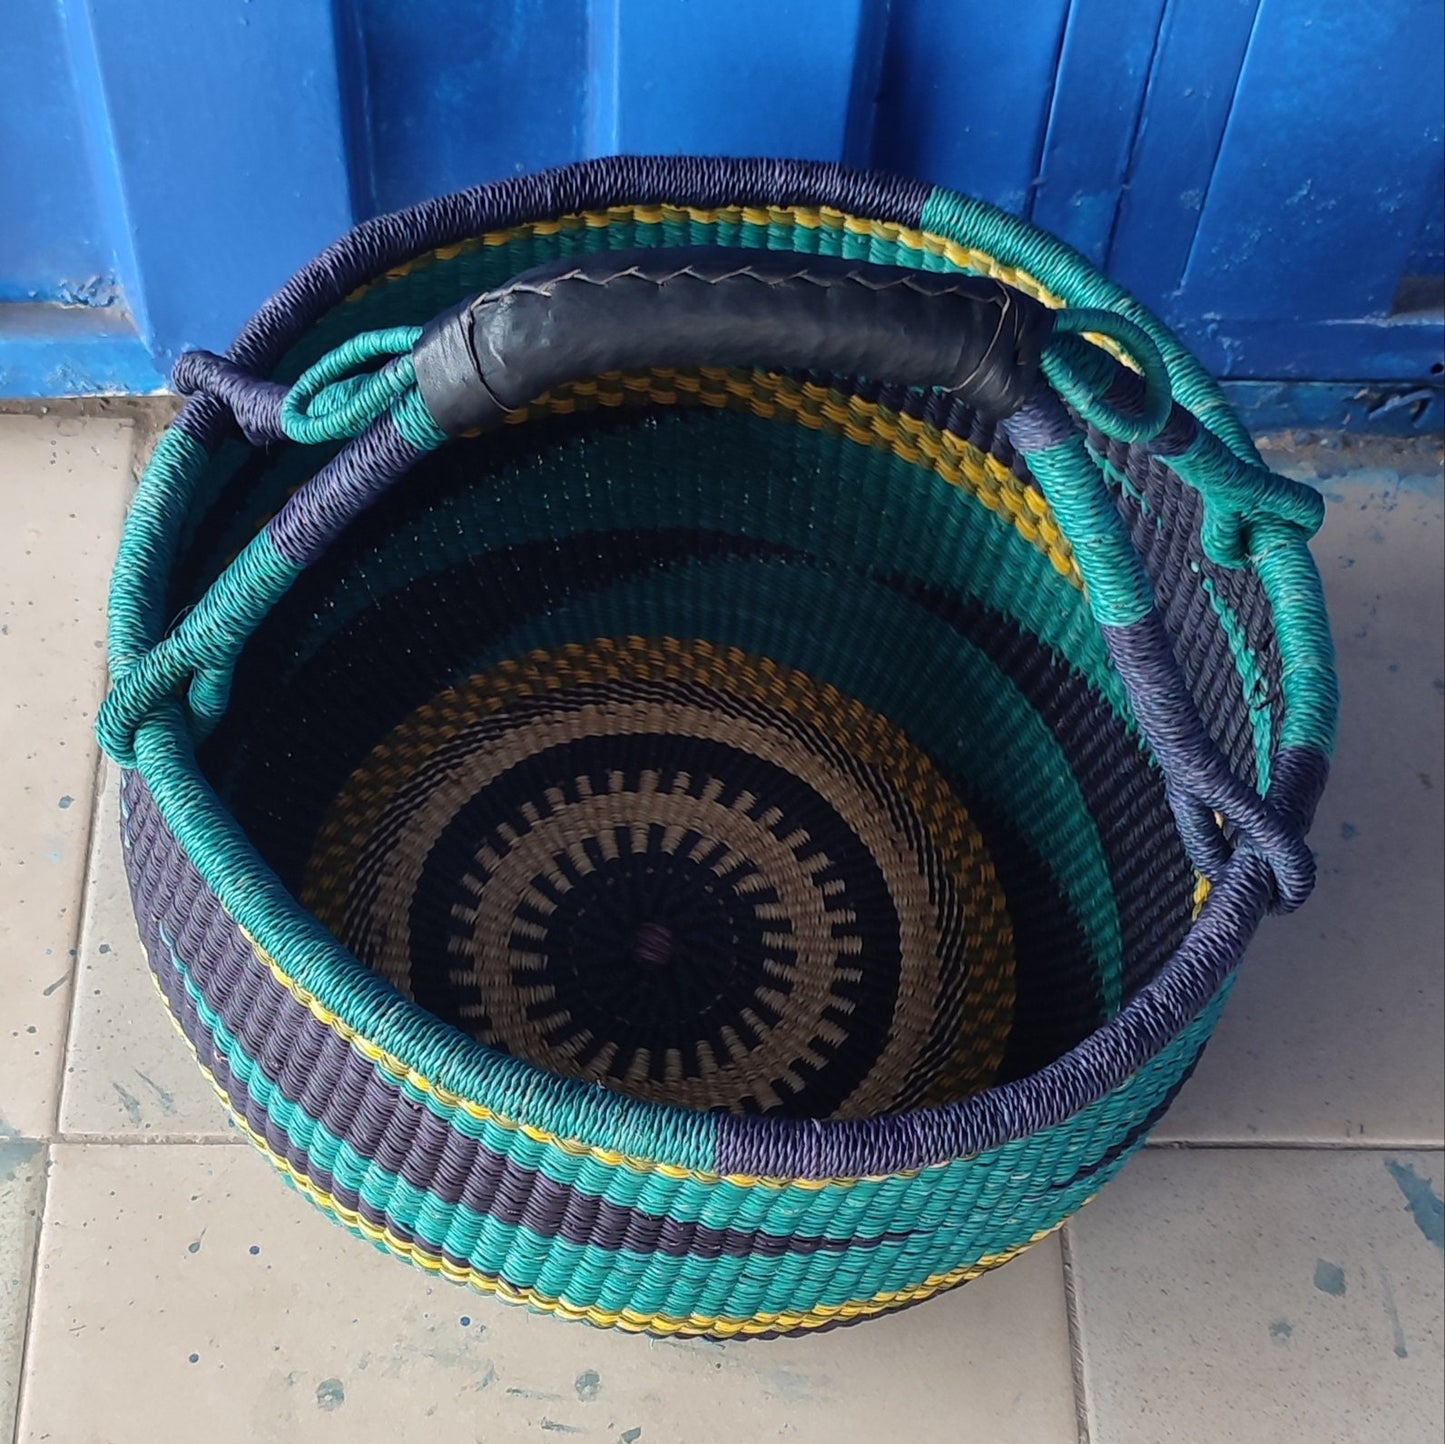 Bolga Basket, African Basket, Handmade Basket, Ghana Basket, Gift for her, Personalized gift 001